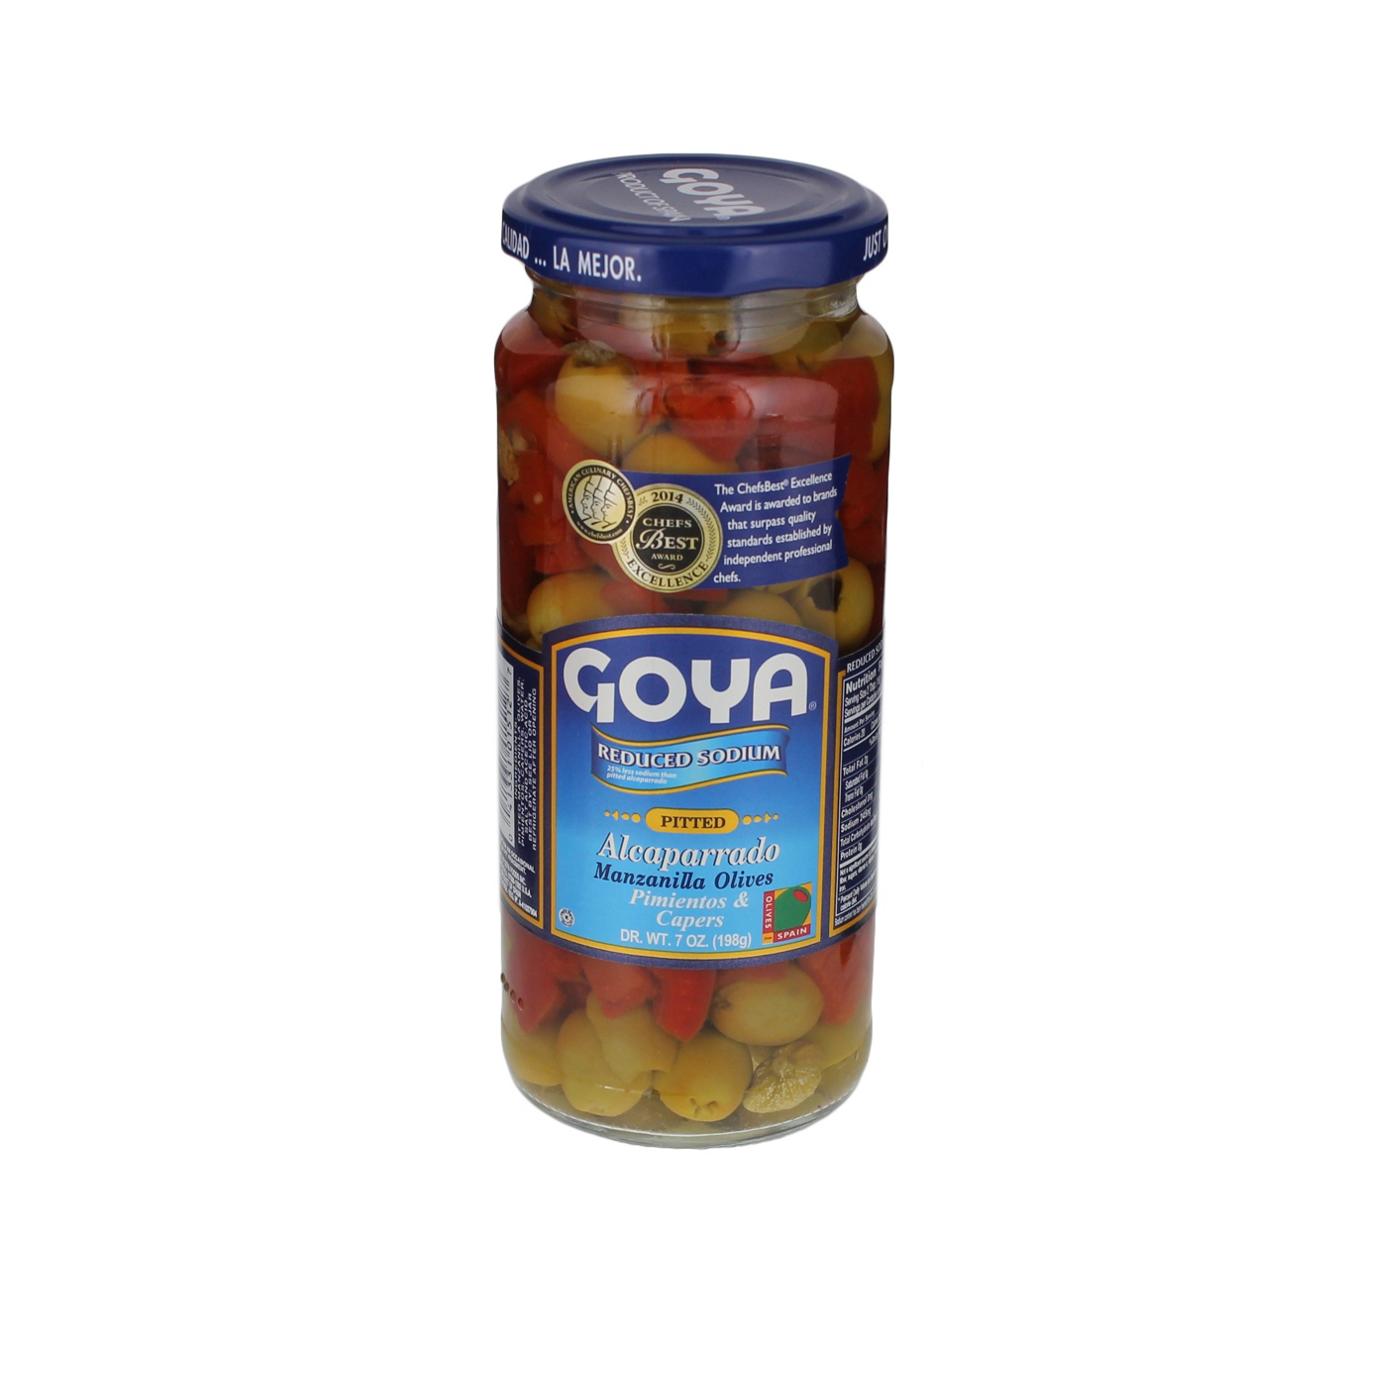 Goya Reduced Sodium Alcaparrado Manzanilla Olives Pimientos & Capers; image 1 of 2